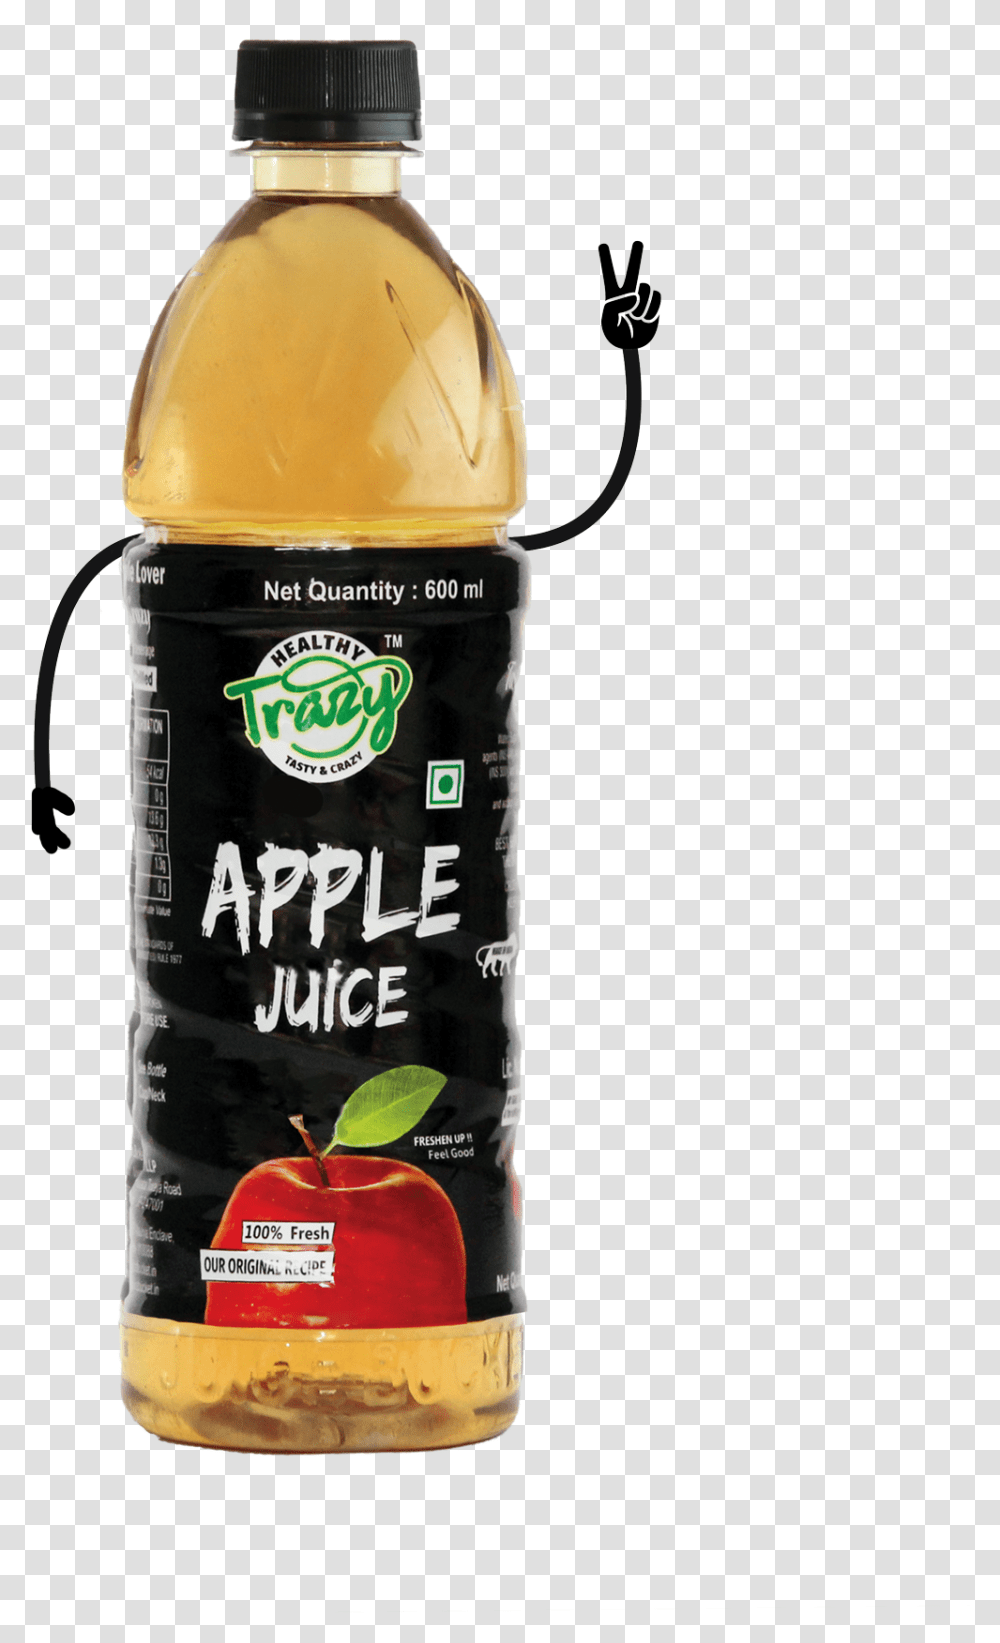 Apple Juice Trazy Juices Plastic Bottle, Beverage, Shaker, Lager, Beer Transparent Png